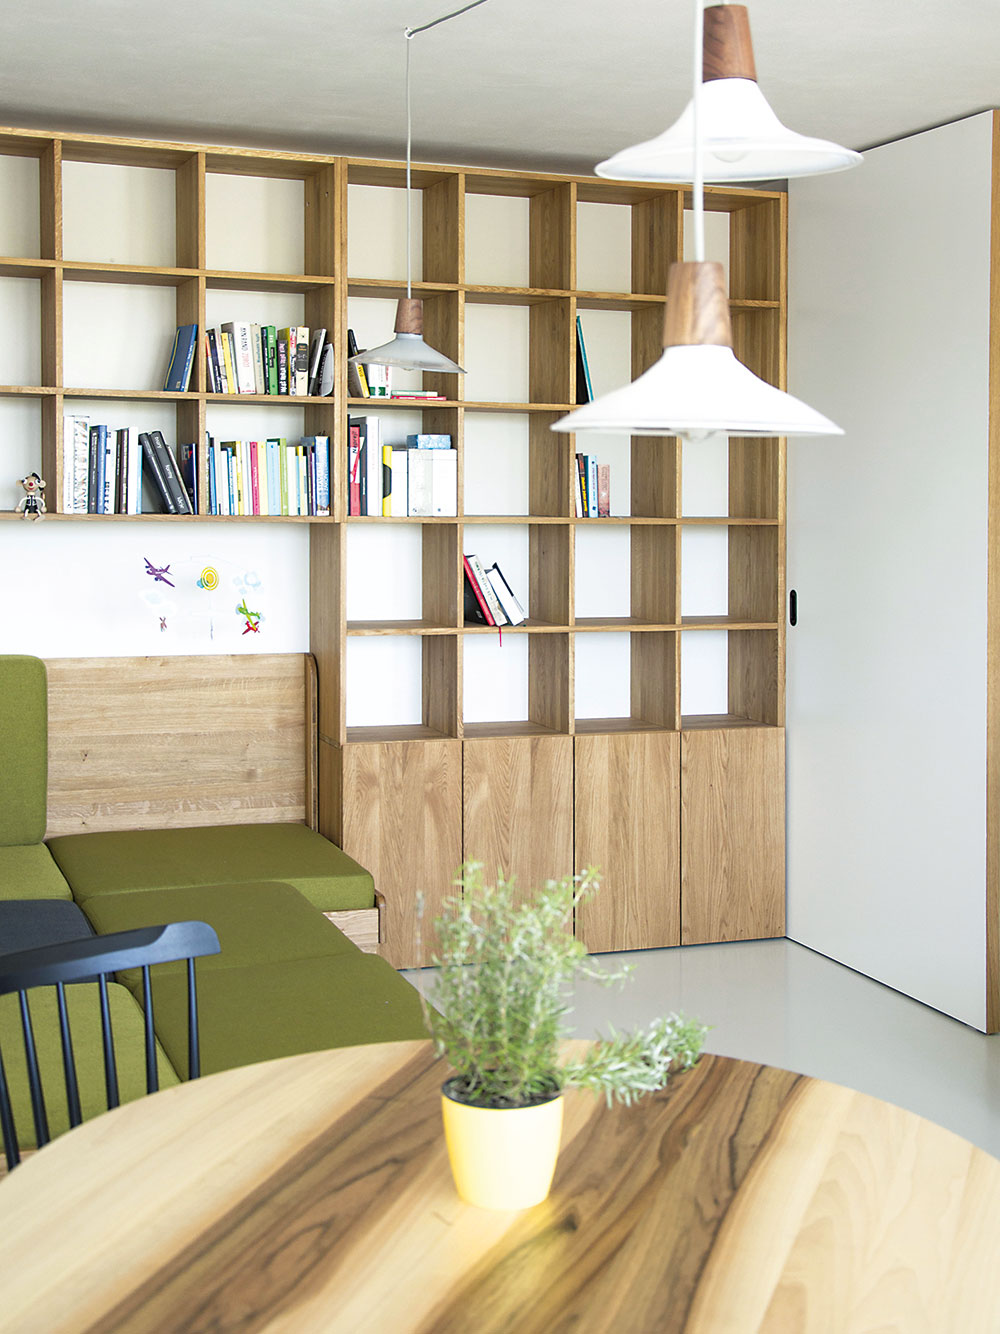 Oživujícím prvkem denní části je zelené čalounění sedačky. Její korpus je vyroben z téhož dubového dřeva jako knihovna i část kuchyňské linky, což prostor sjednocuje. FOTO SCHWESTERN